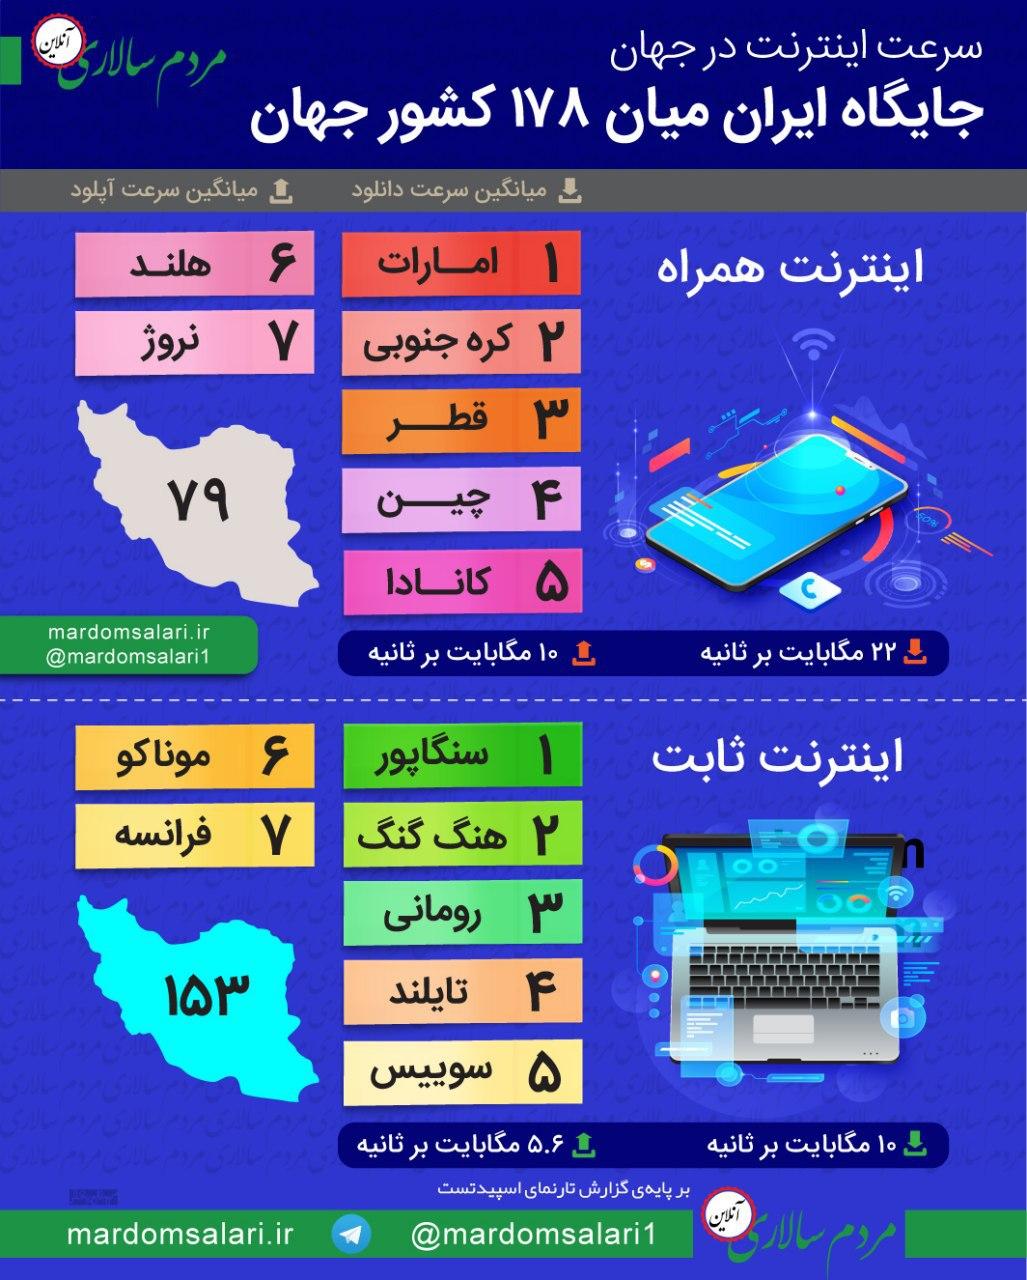 اینفوگرافی جایگاه ایران از نظر سرعت اینترنت در جهان